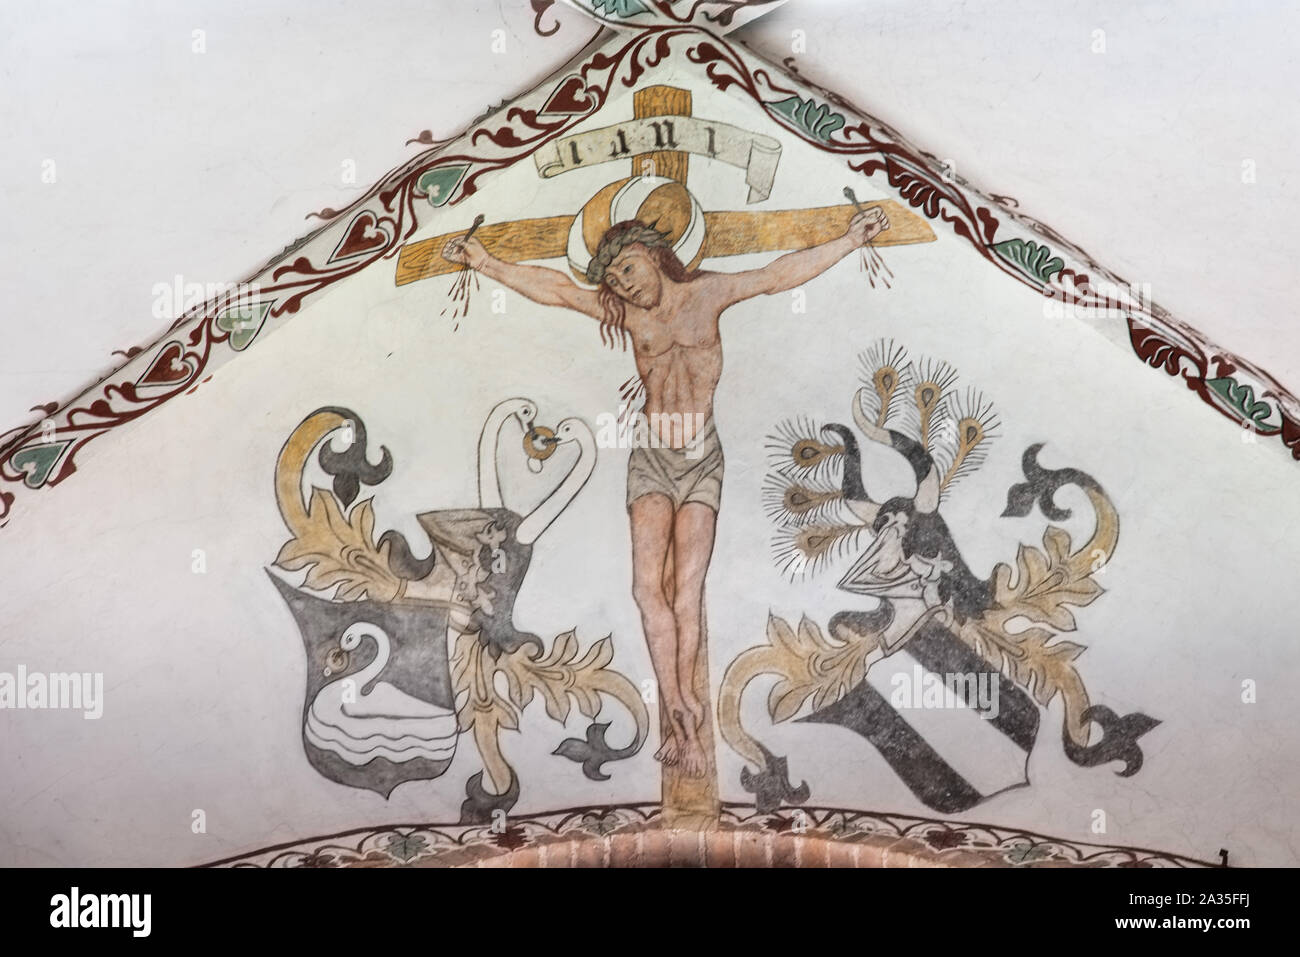 Die Kreuzigung Jesu am Karfreitag, ein Fresko, etwa ab dem Jahr 1500 in der Kirche St. Maria, Elsinore, Dänemark, 14. Mai 2019 Stockfoto